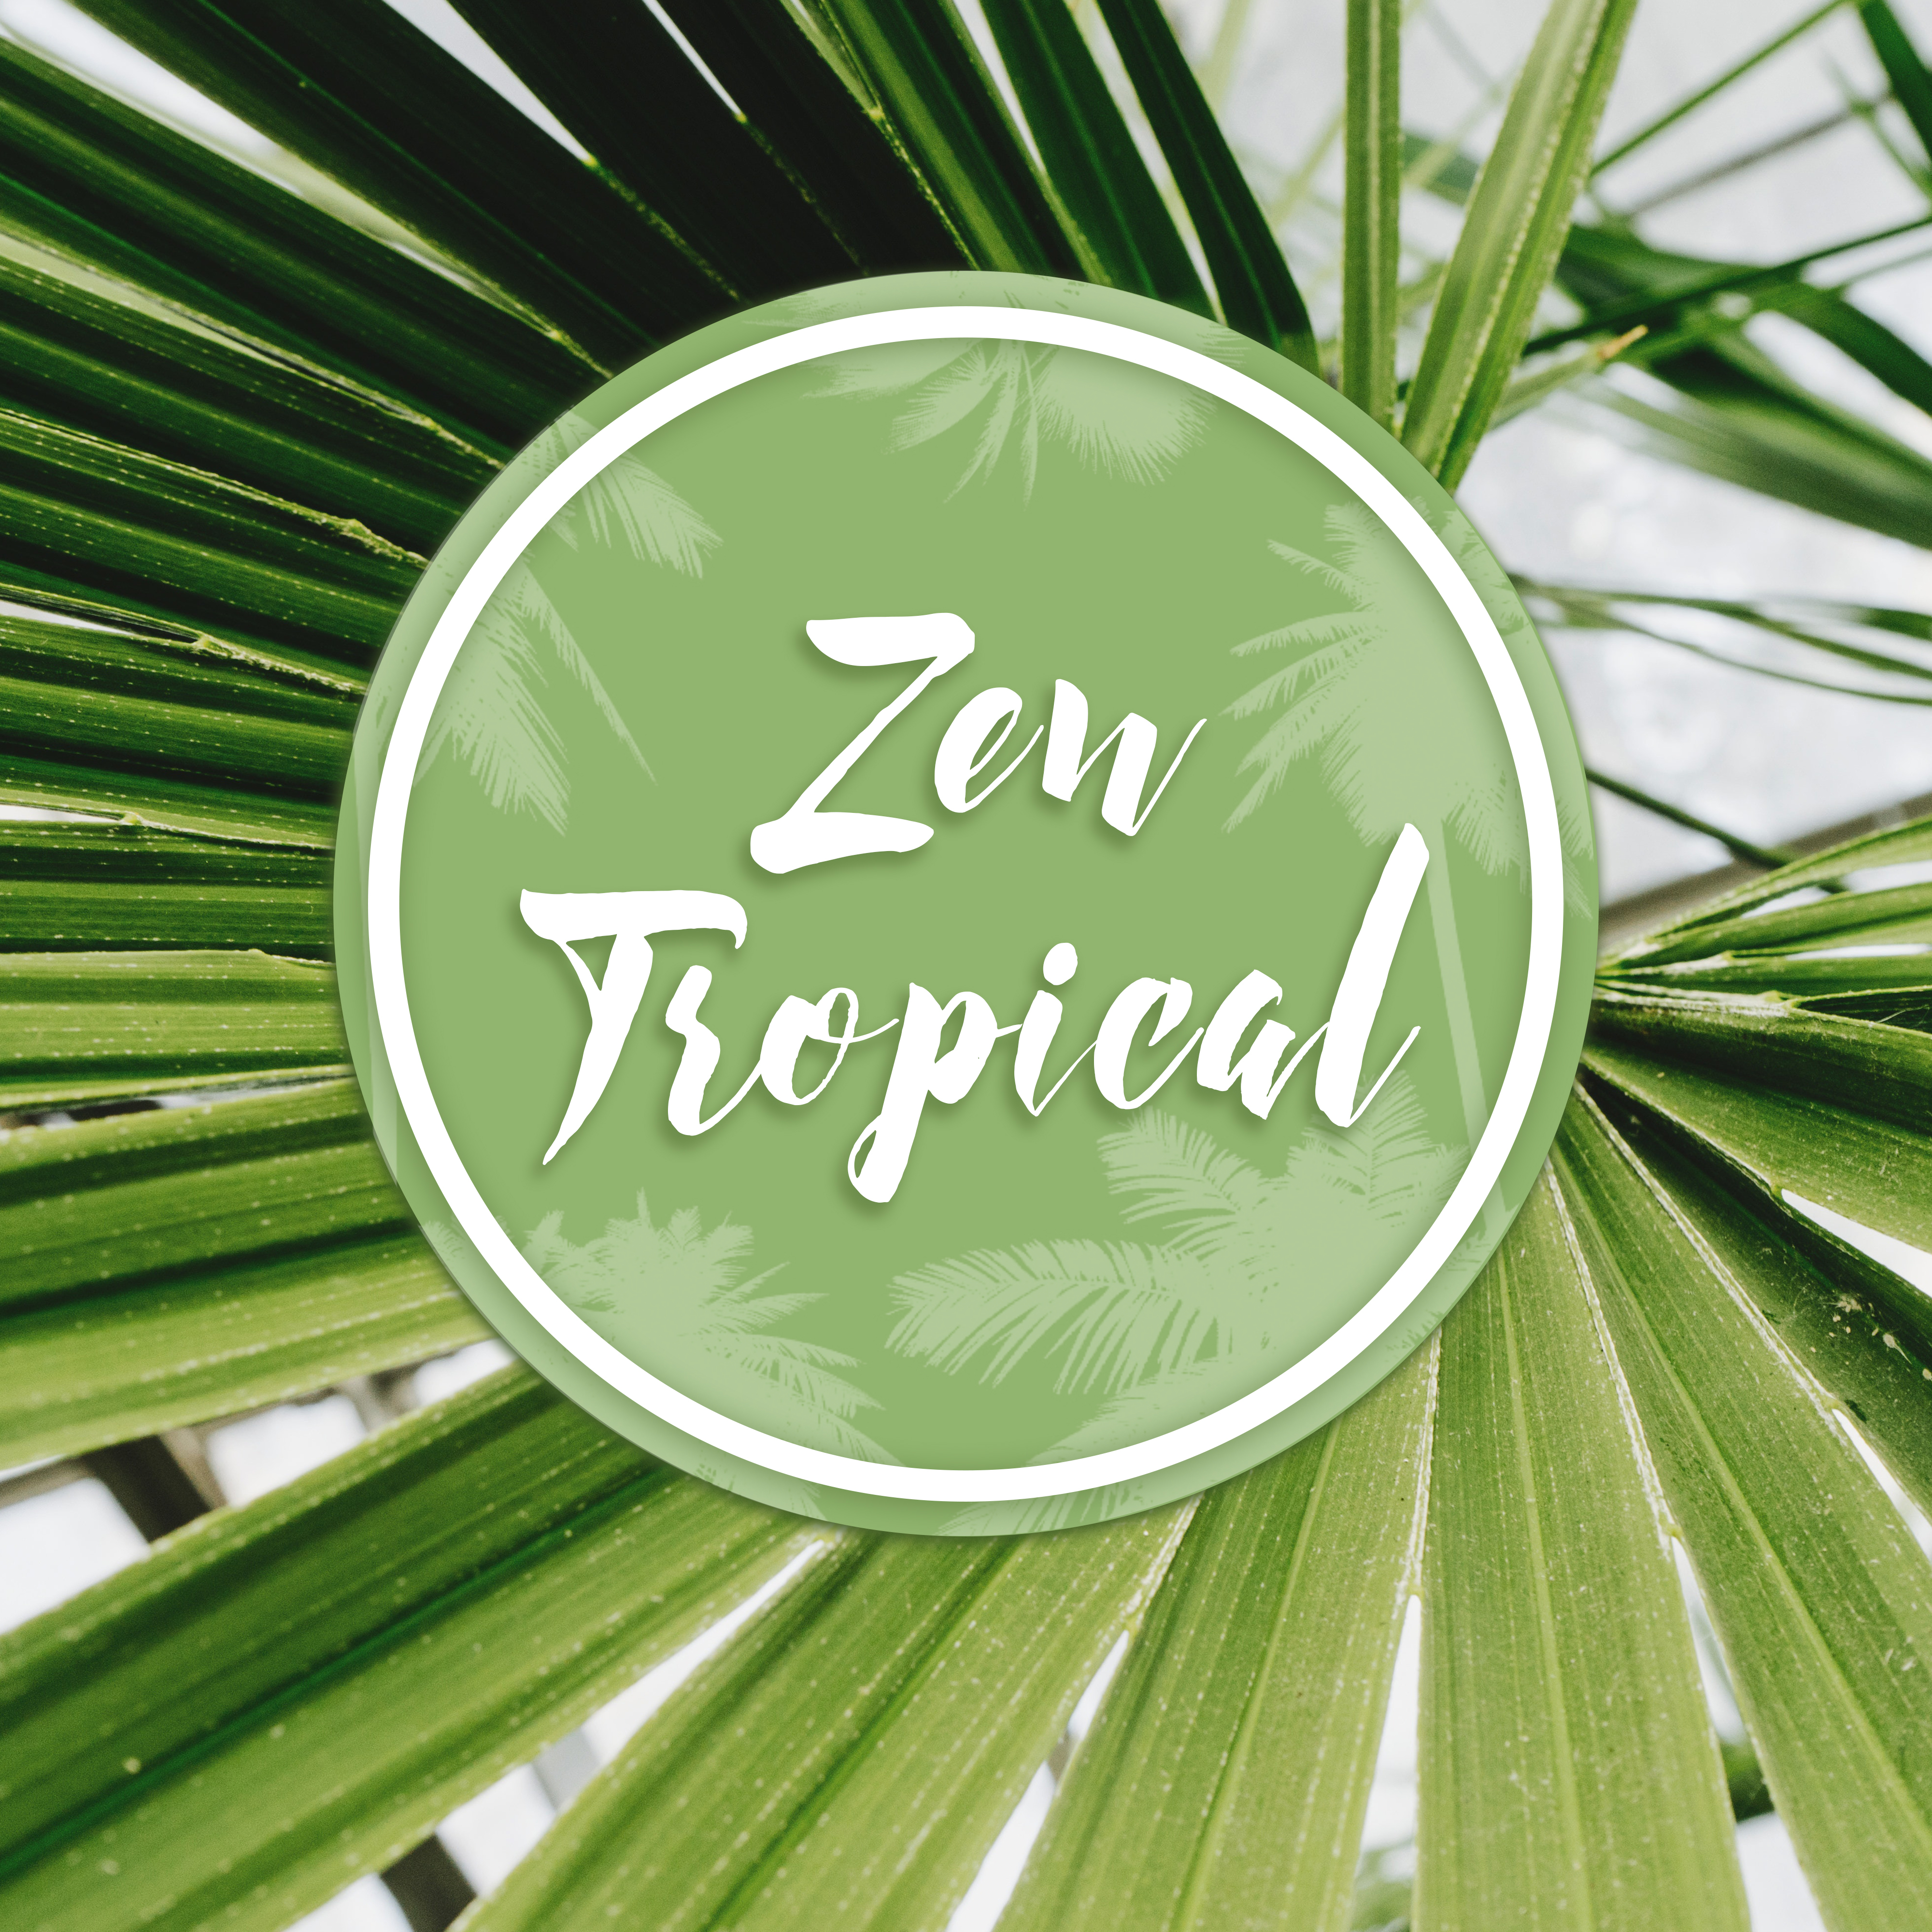 Zen Tropical